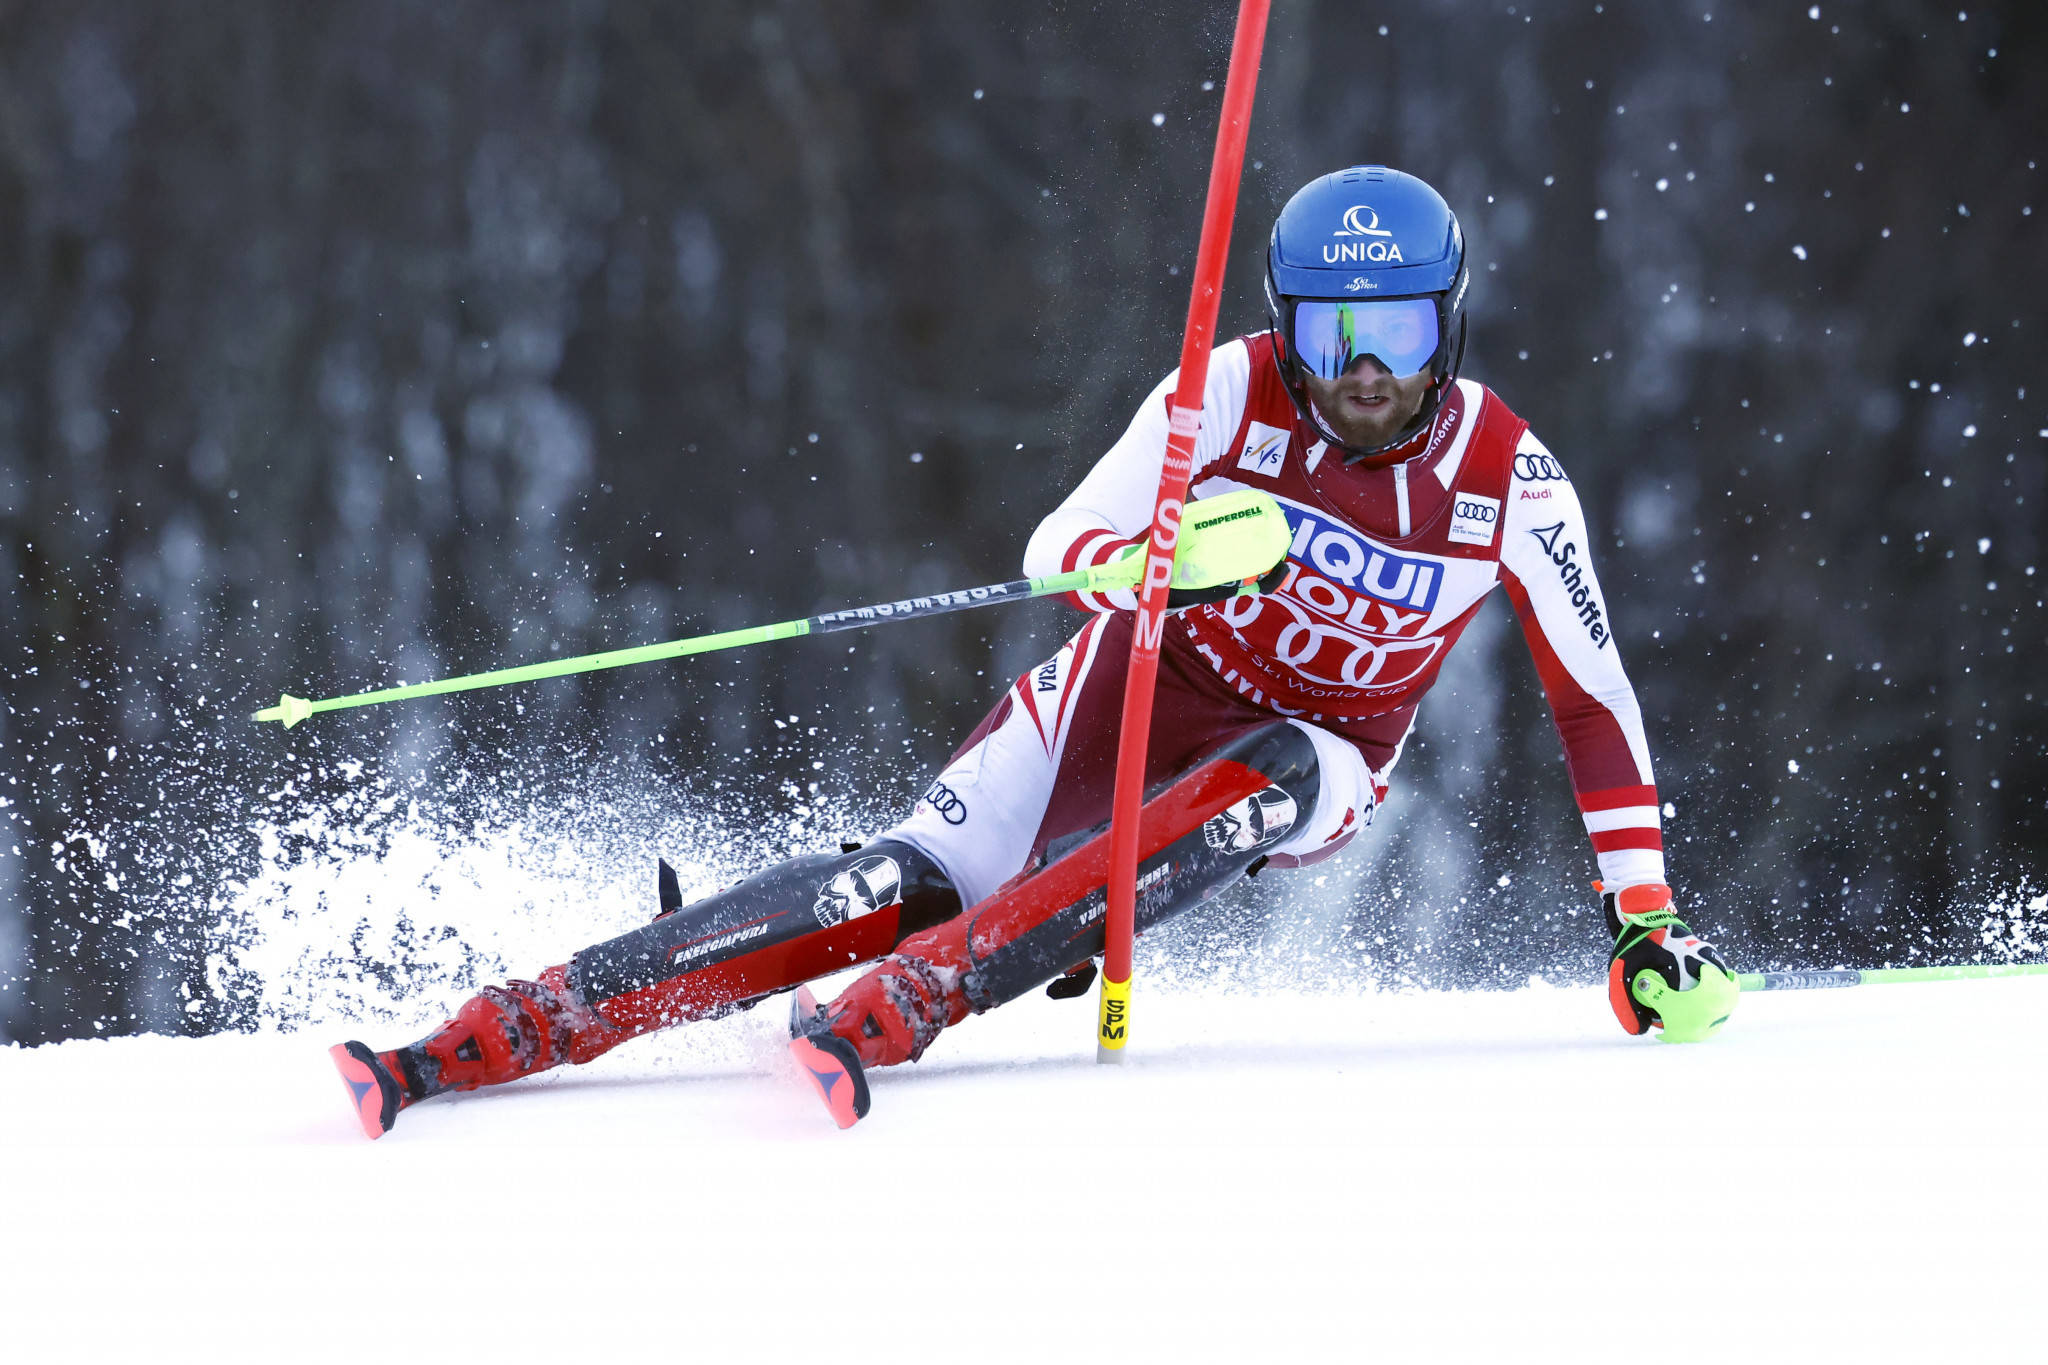 原创高山滑雪世界冠军脚踝受伤 奥地利名将缺席9场比赛